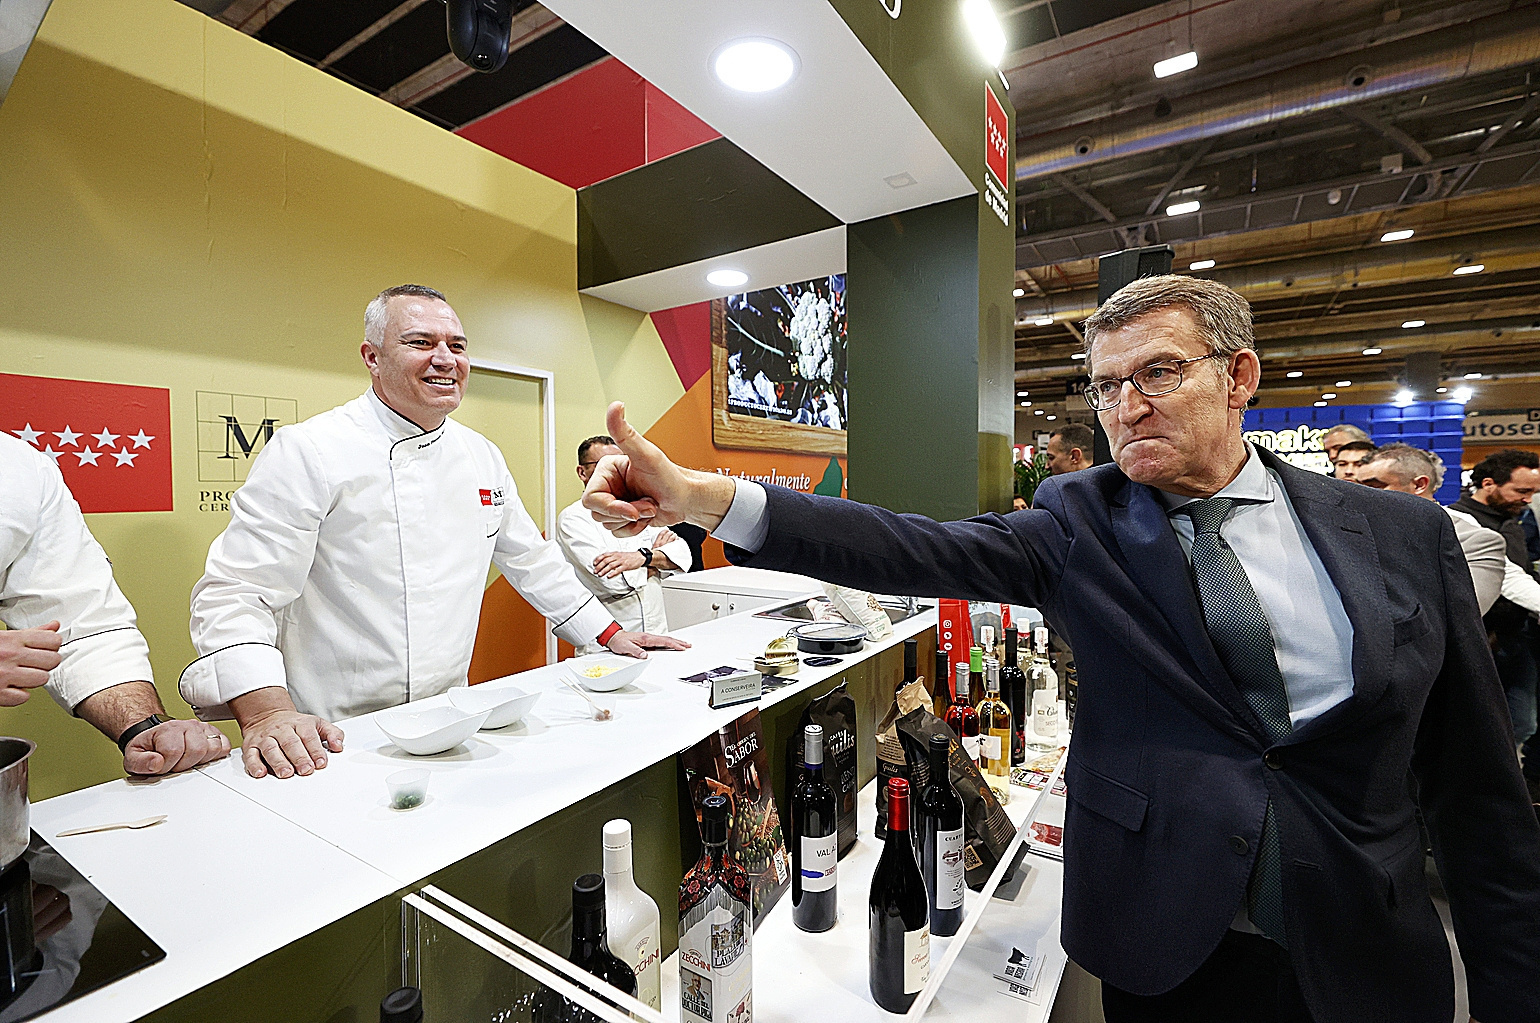 Alberto Núñez Feijóo, ayer en el stand de la Comunidad de Madrid durante su visita al congreso gastronómico internacional Madrid Fusión.